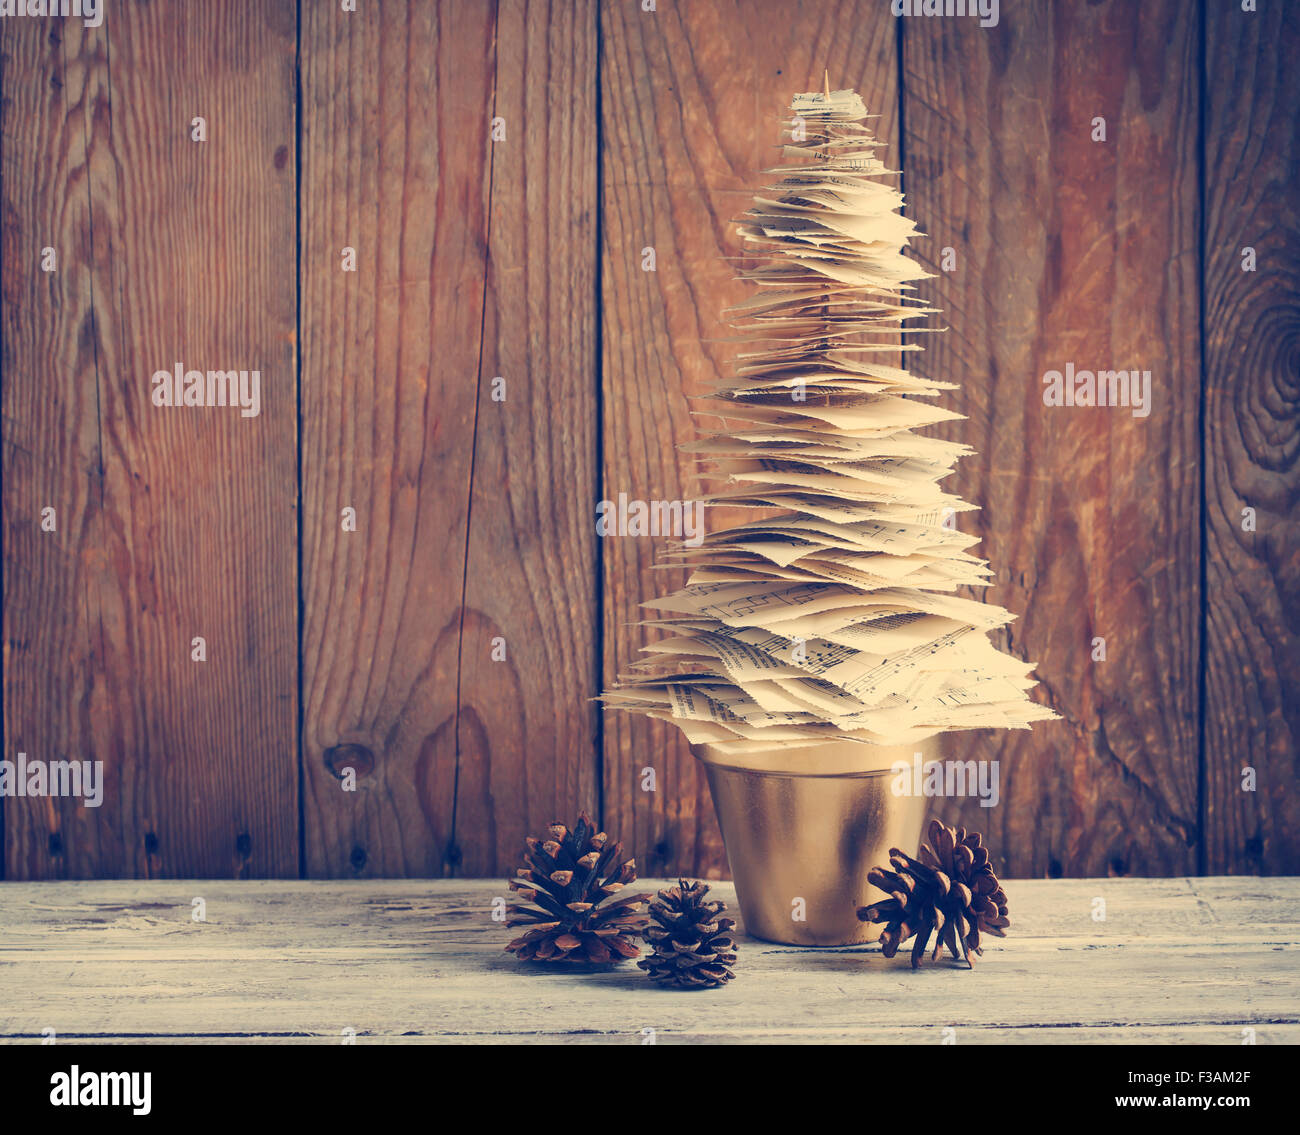 Arbre de Noël en papier. Décoration de Noël. Image tonique Banque D'Images